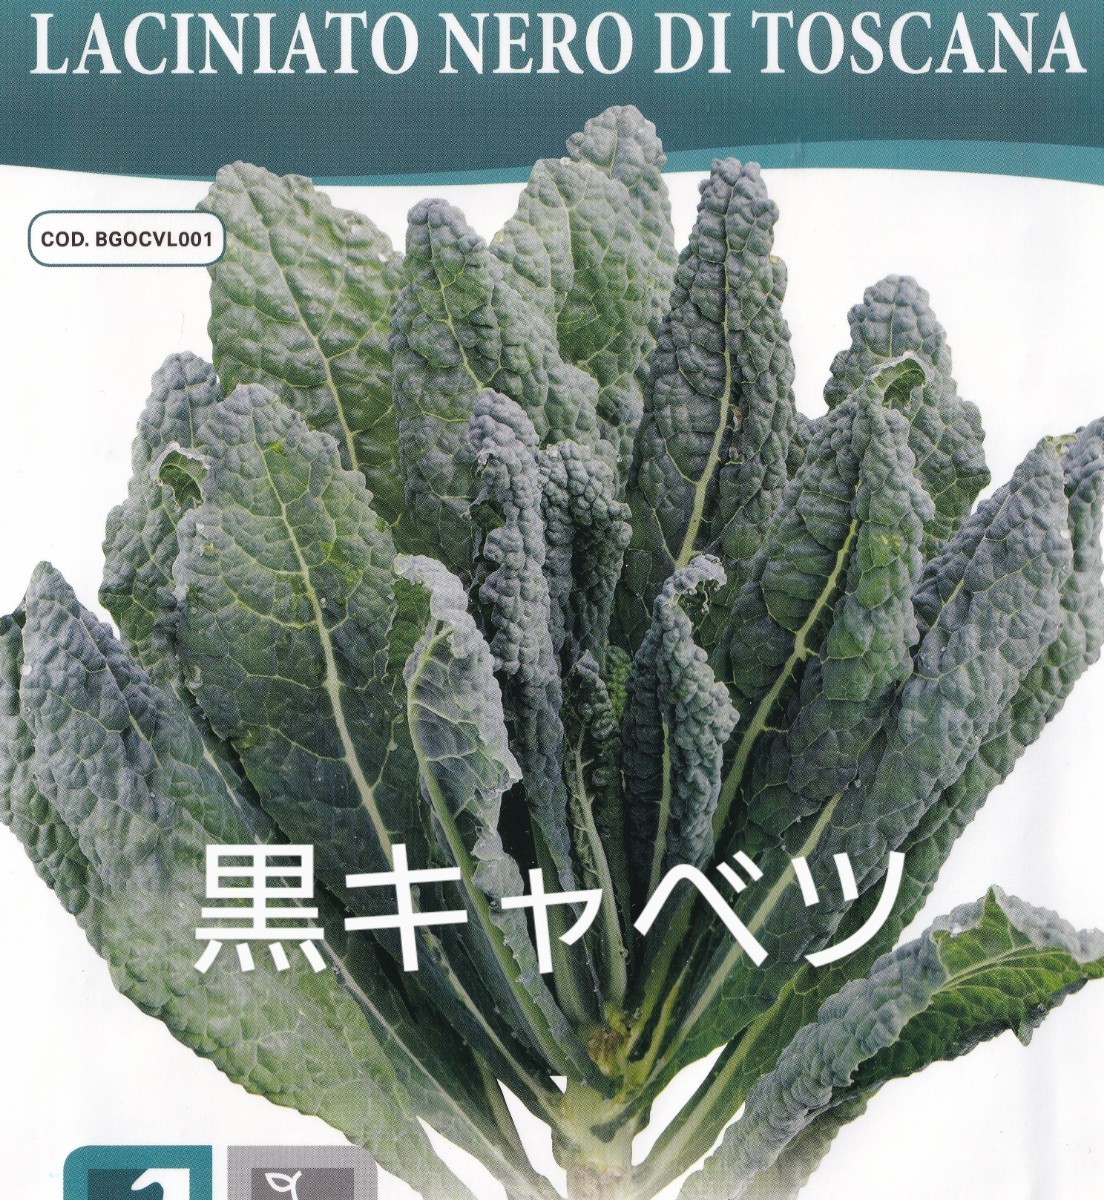  машина BORO Nero. семена 30 шарик чёрный капуста LACINIATO NERO DI TOSCANA фиксация вид не . лампочка капуста [2025.12] кудрявая капуста. компания . витамин минерал . изобилие 